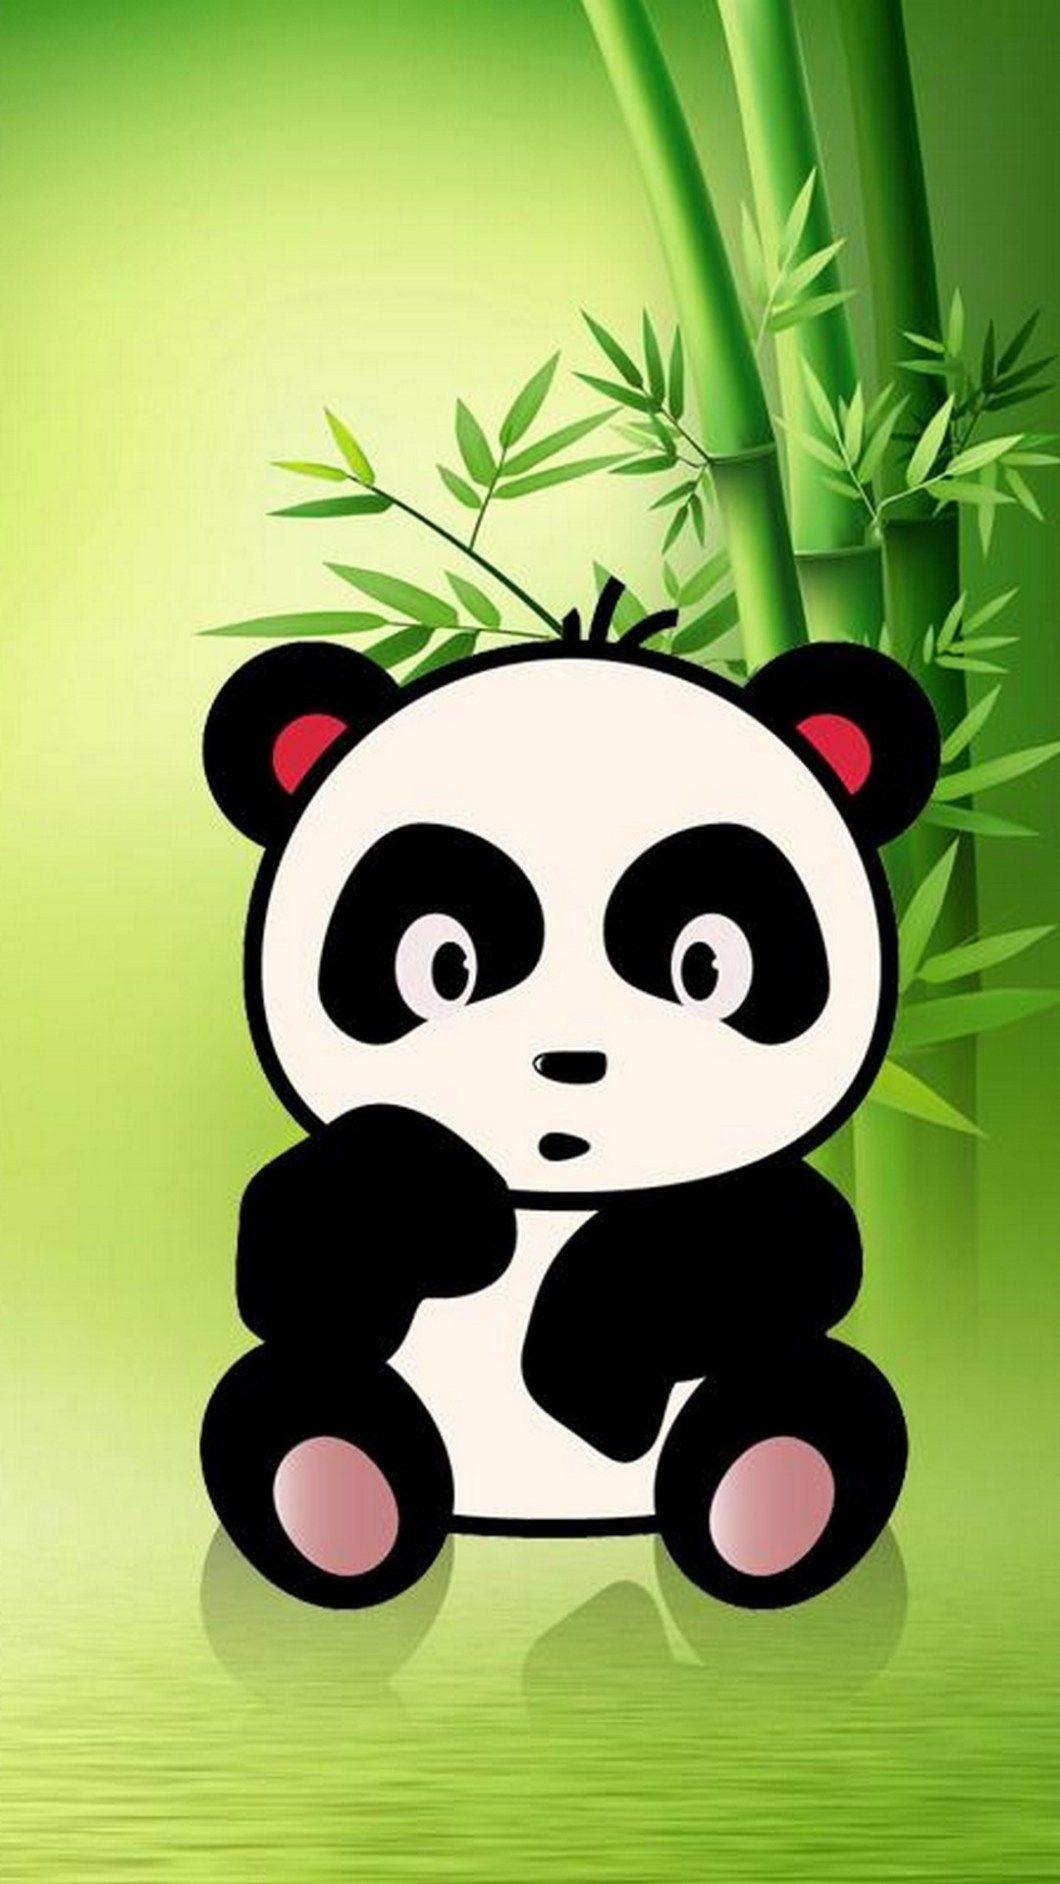 Kawaii Panda Wallpapers - Top Free Kawaii Panda Backgrounds